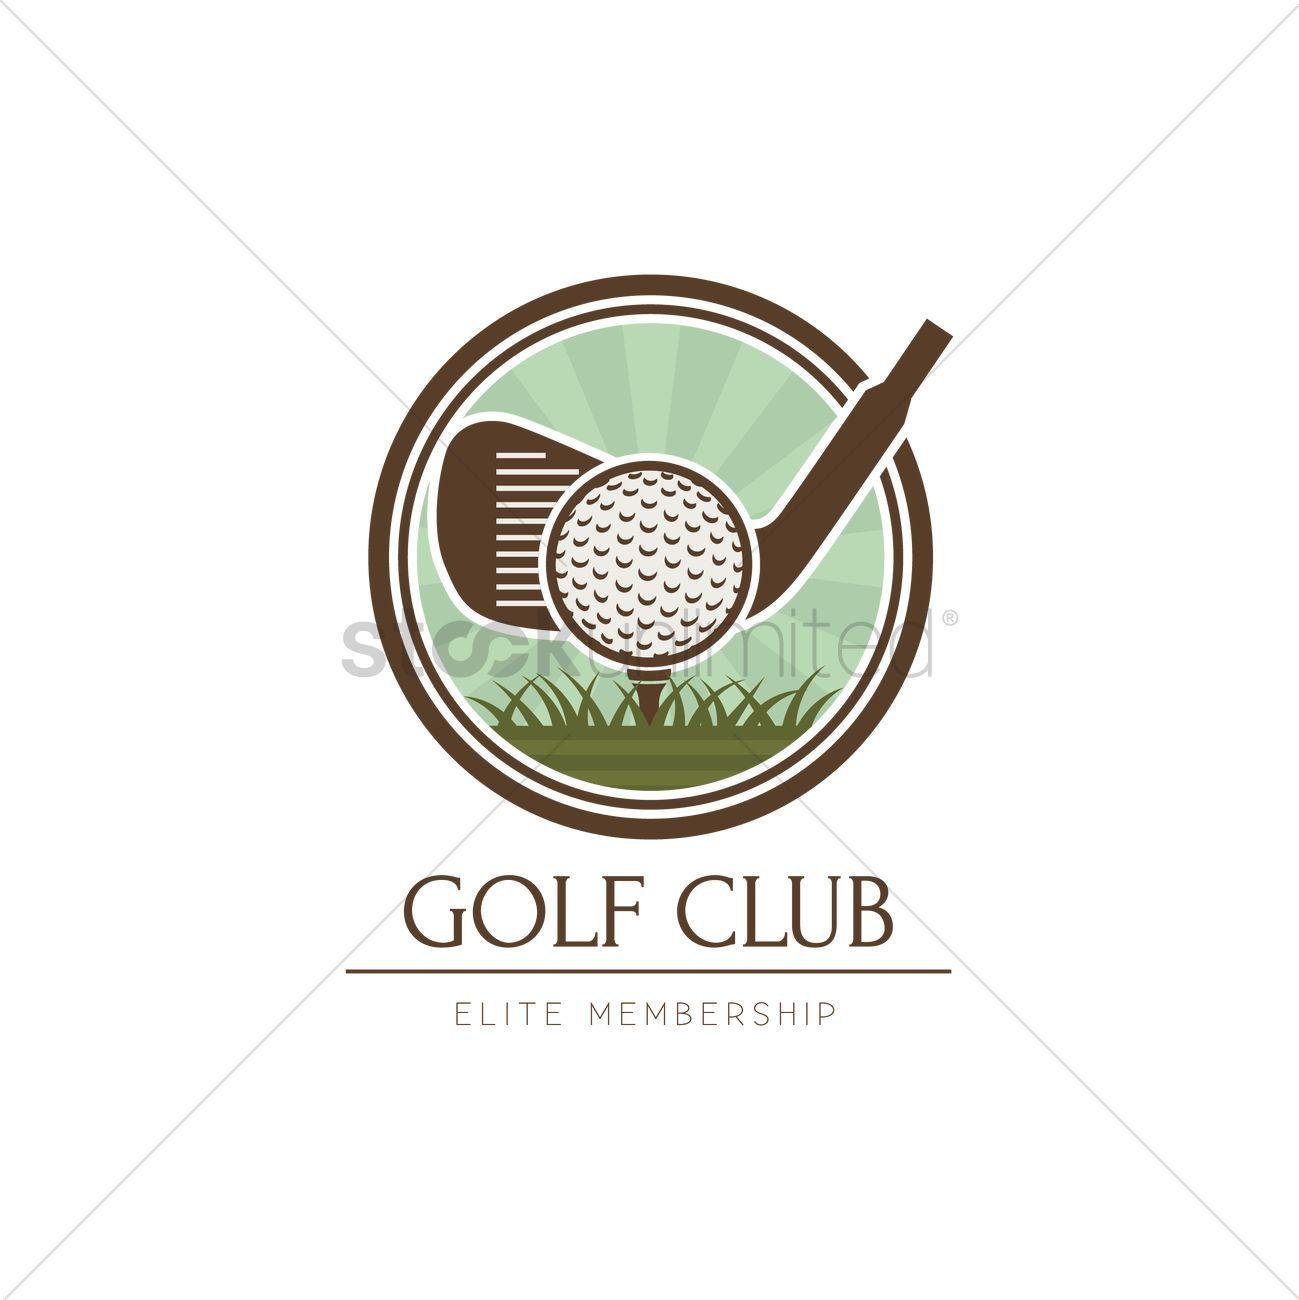 Golf Club Logo - Golf club logo element design Vector Image